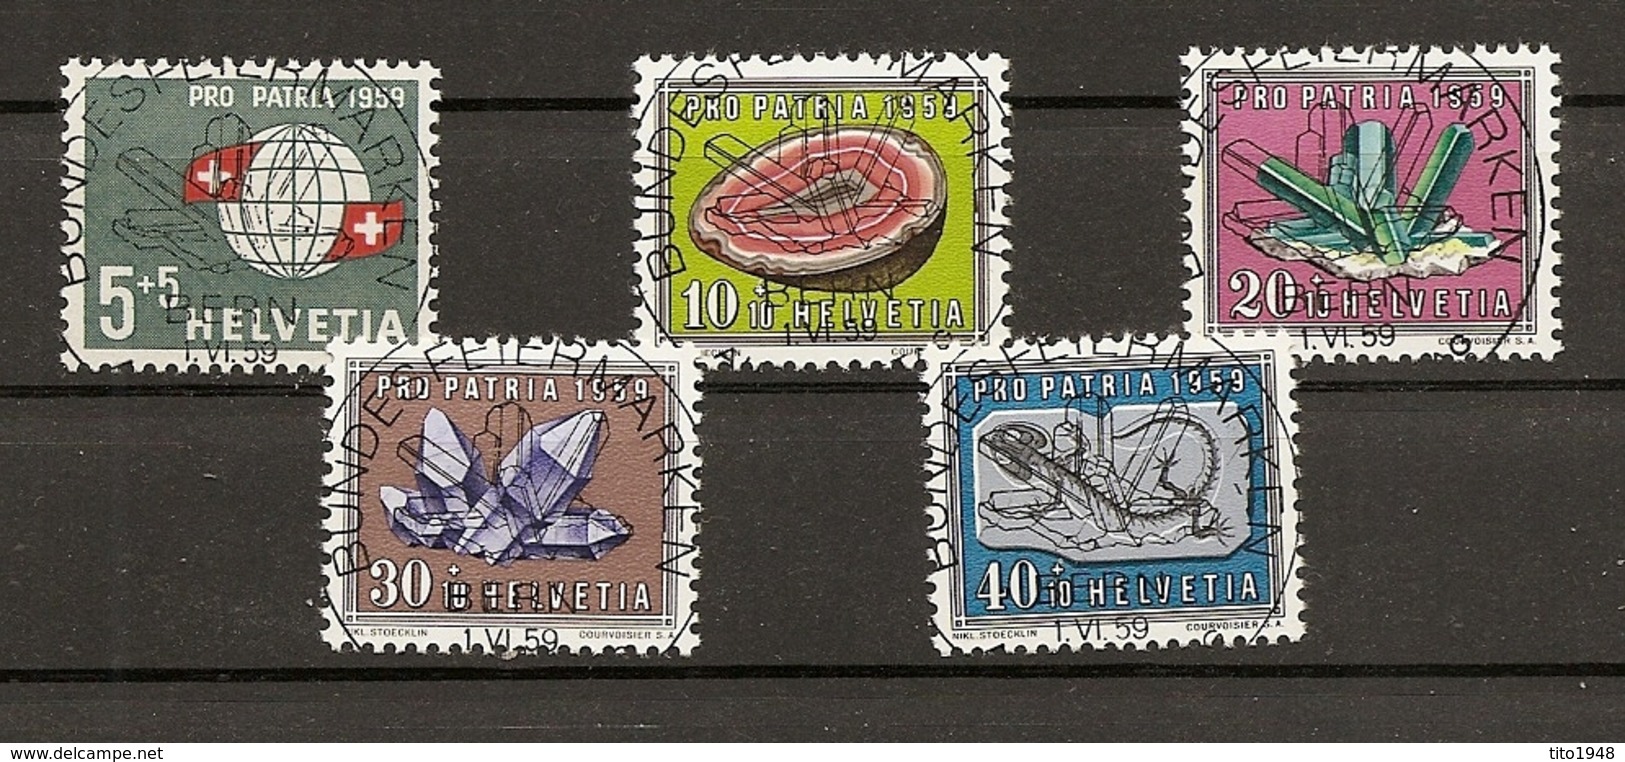 Schweiz, 1959 Pro Patria Satz, ET Vollstempel, Bundesfeiermarken Bern, Siehe Scans! - Used Stamps